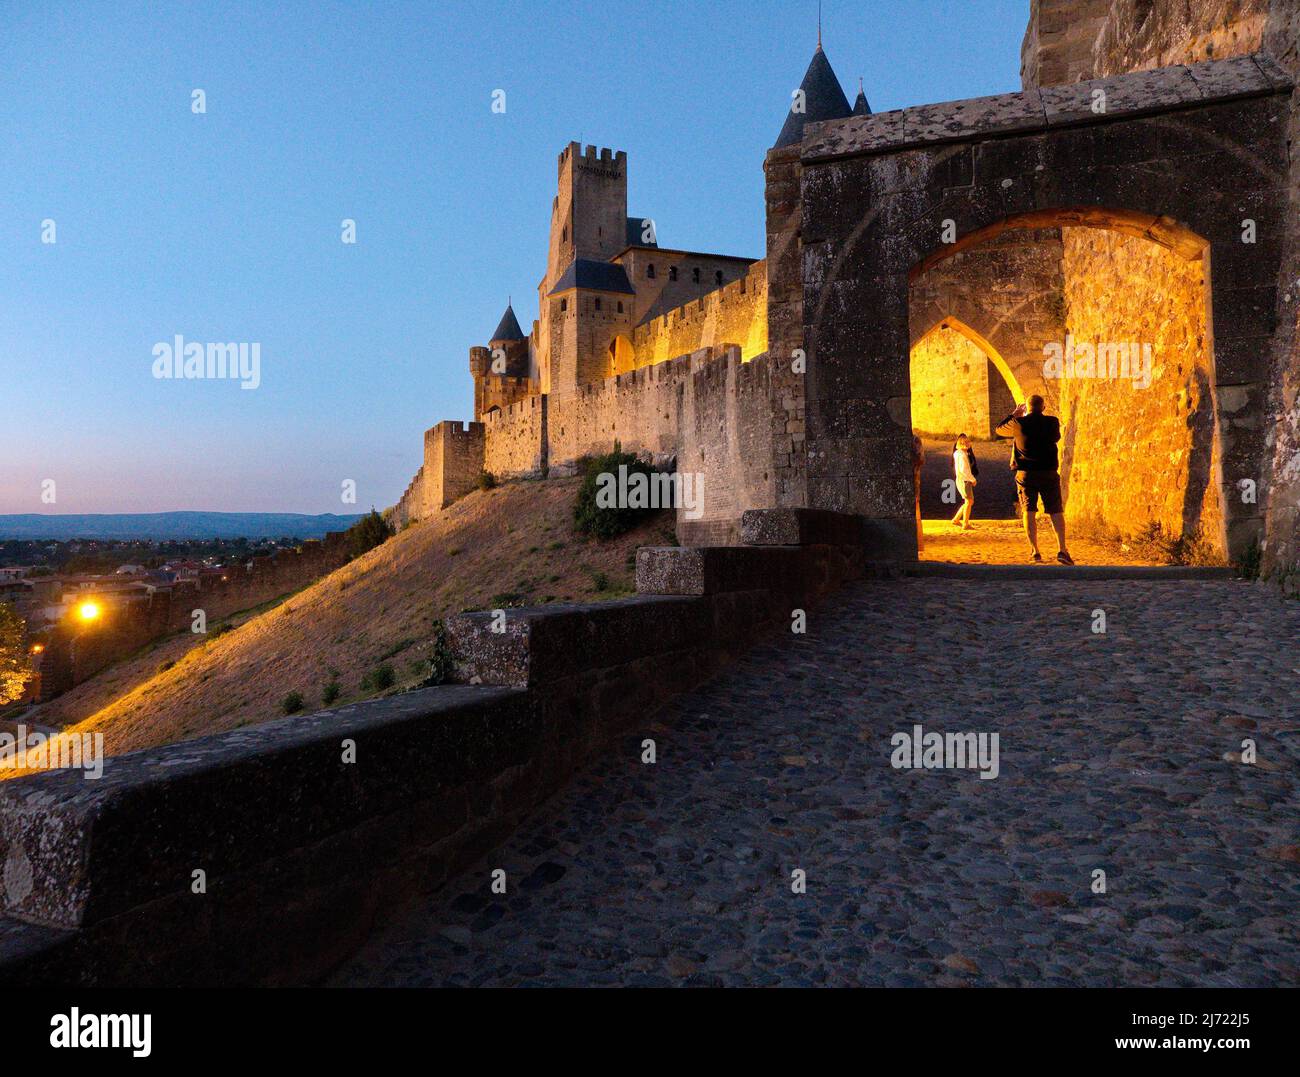 Carcassonne, Weltkulturerbe der UNESCO, ist eine mittelalterliche Festungsstadt an der Aude, Okzitanien, Frankreich Stockfoto